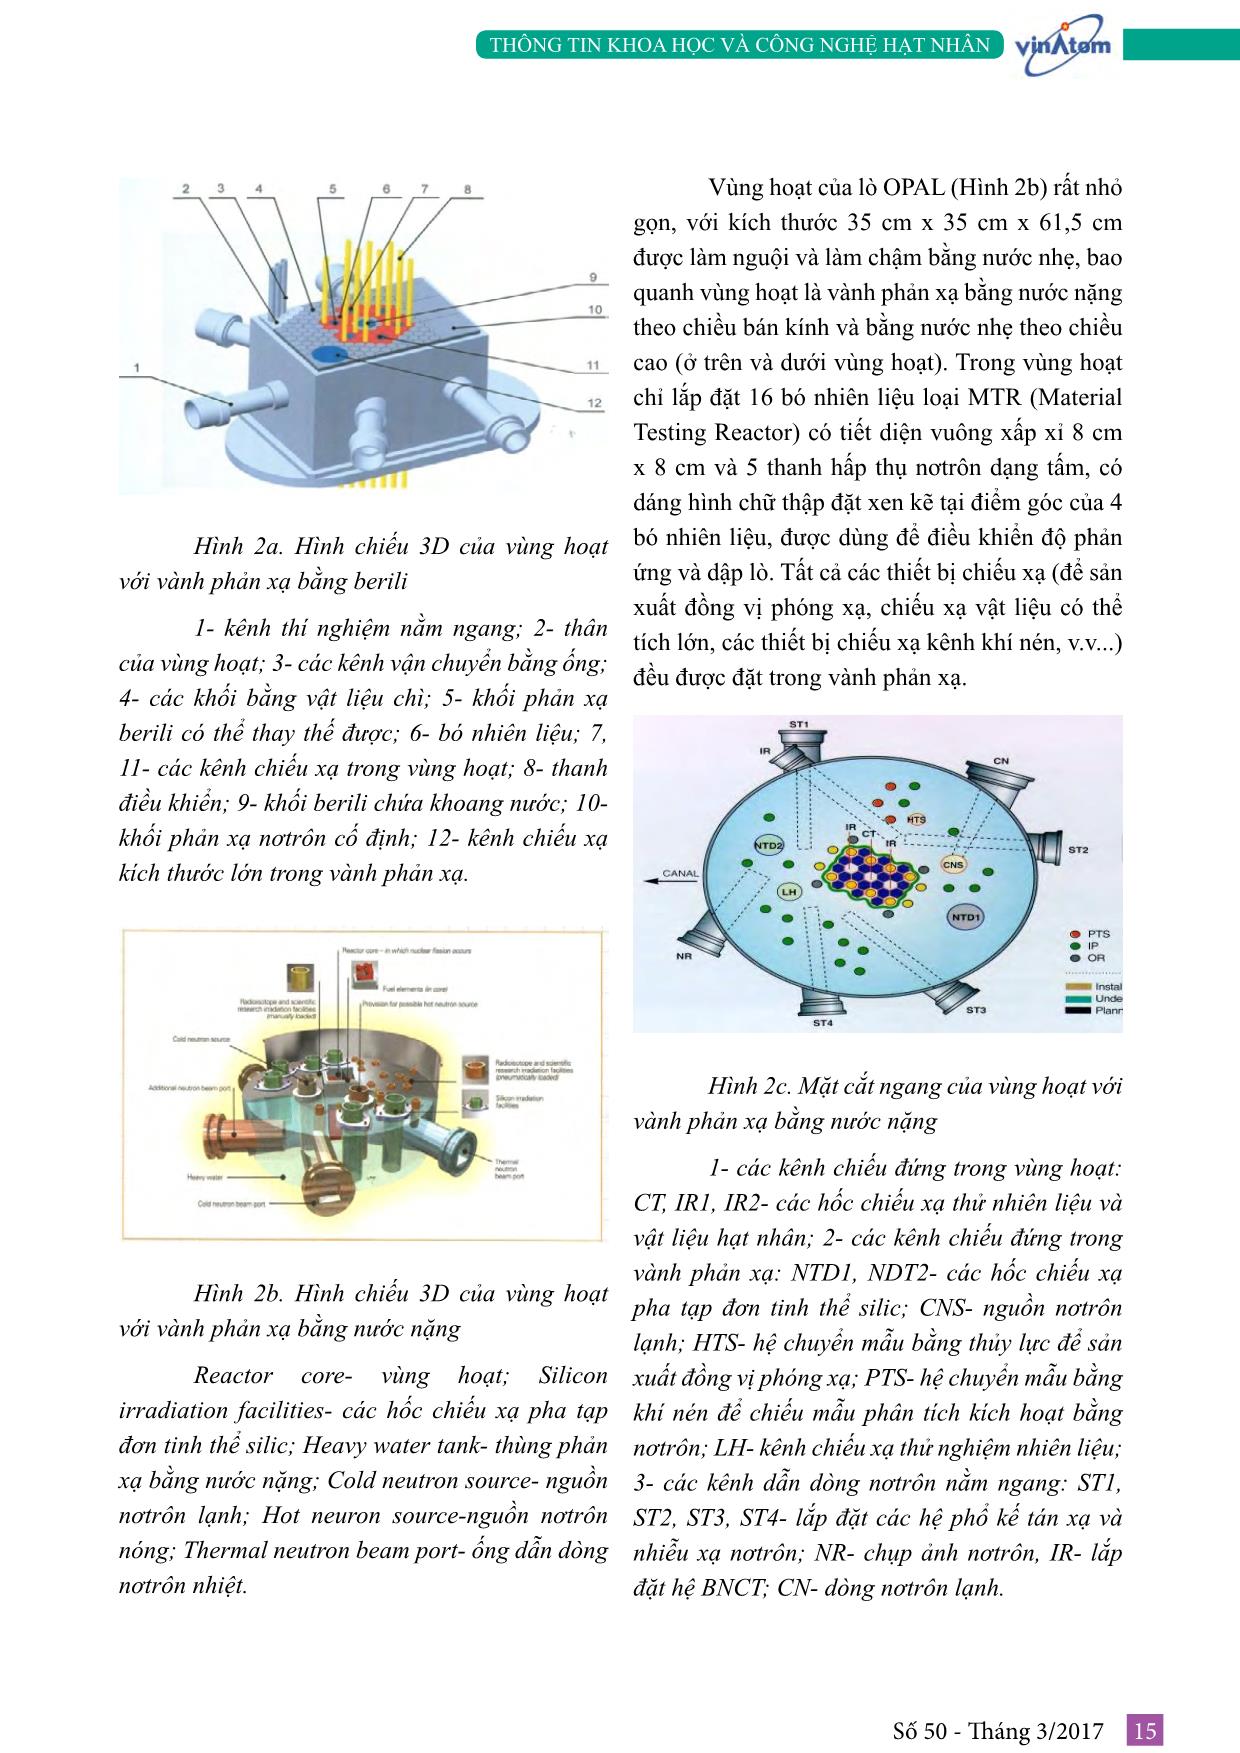 Tìm hiểu về công nghệ lò phản ứng nghiên cứu trang 5